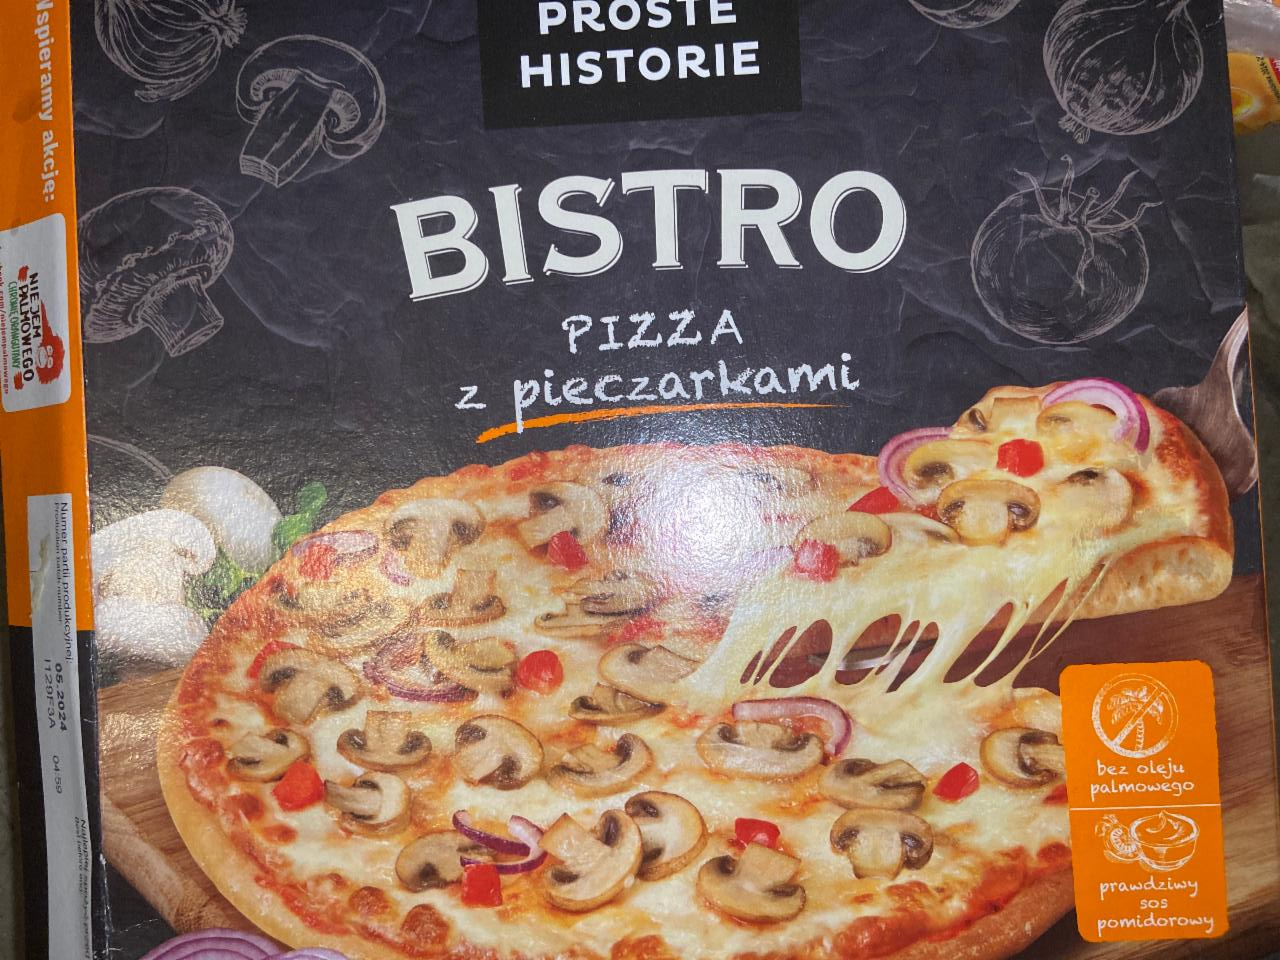 Zdjęcia - Proste Historie Bistro Pizza z pieczarkami 415 g